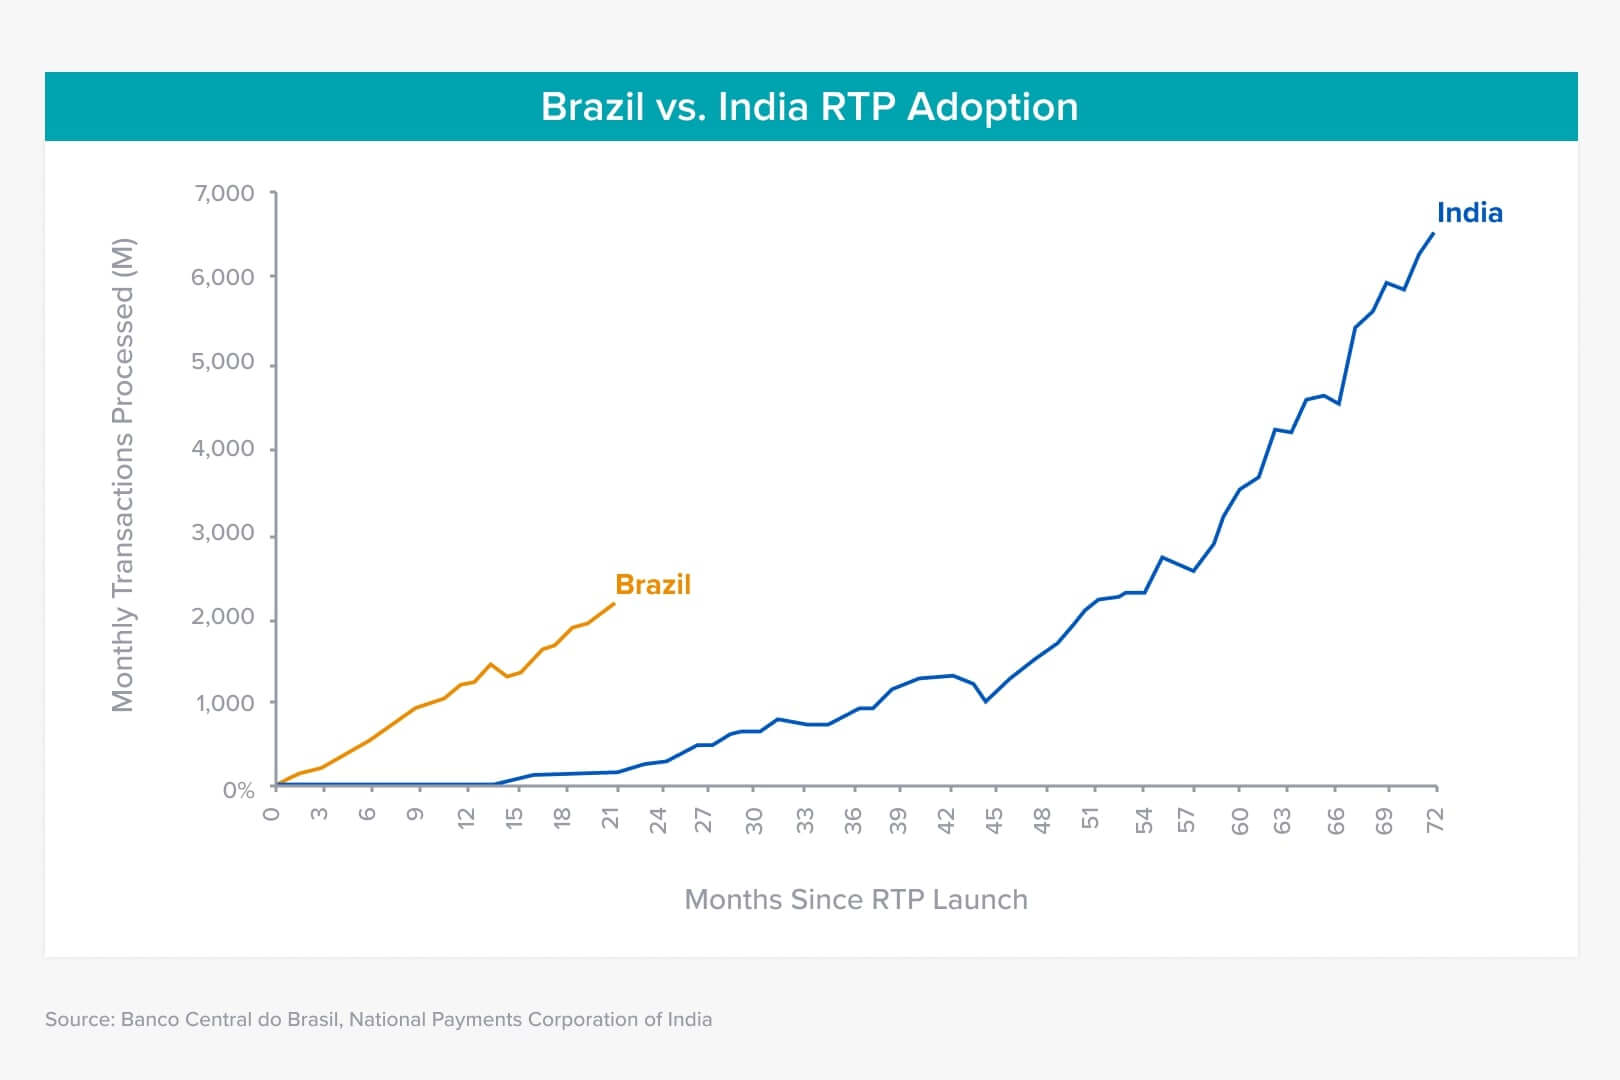 Adoção RTP no Brasil e India (Comparação)